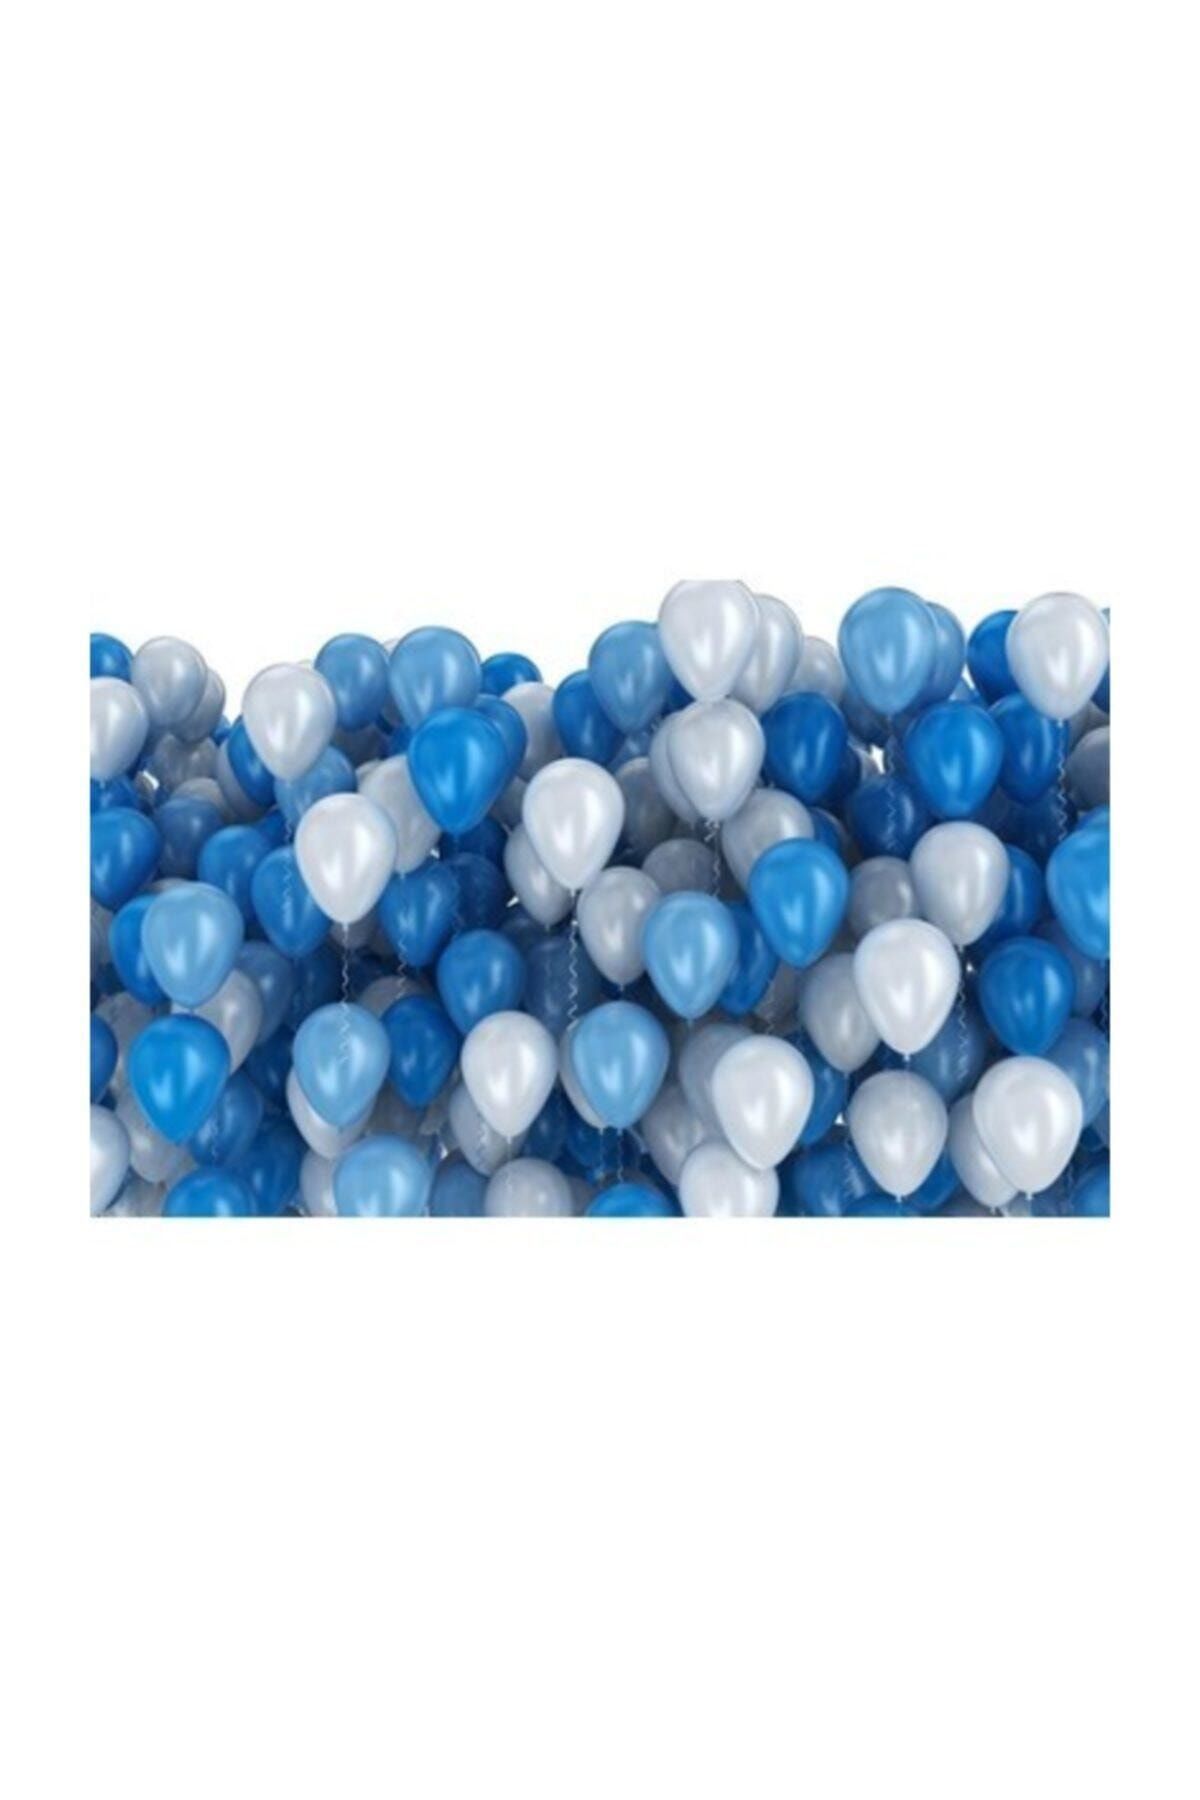 TATLI GÜNLER 25 Adet Metalik Sedefli (koyu Mavi-beyaz) Karışık Balon Helyumla Uçan